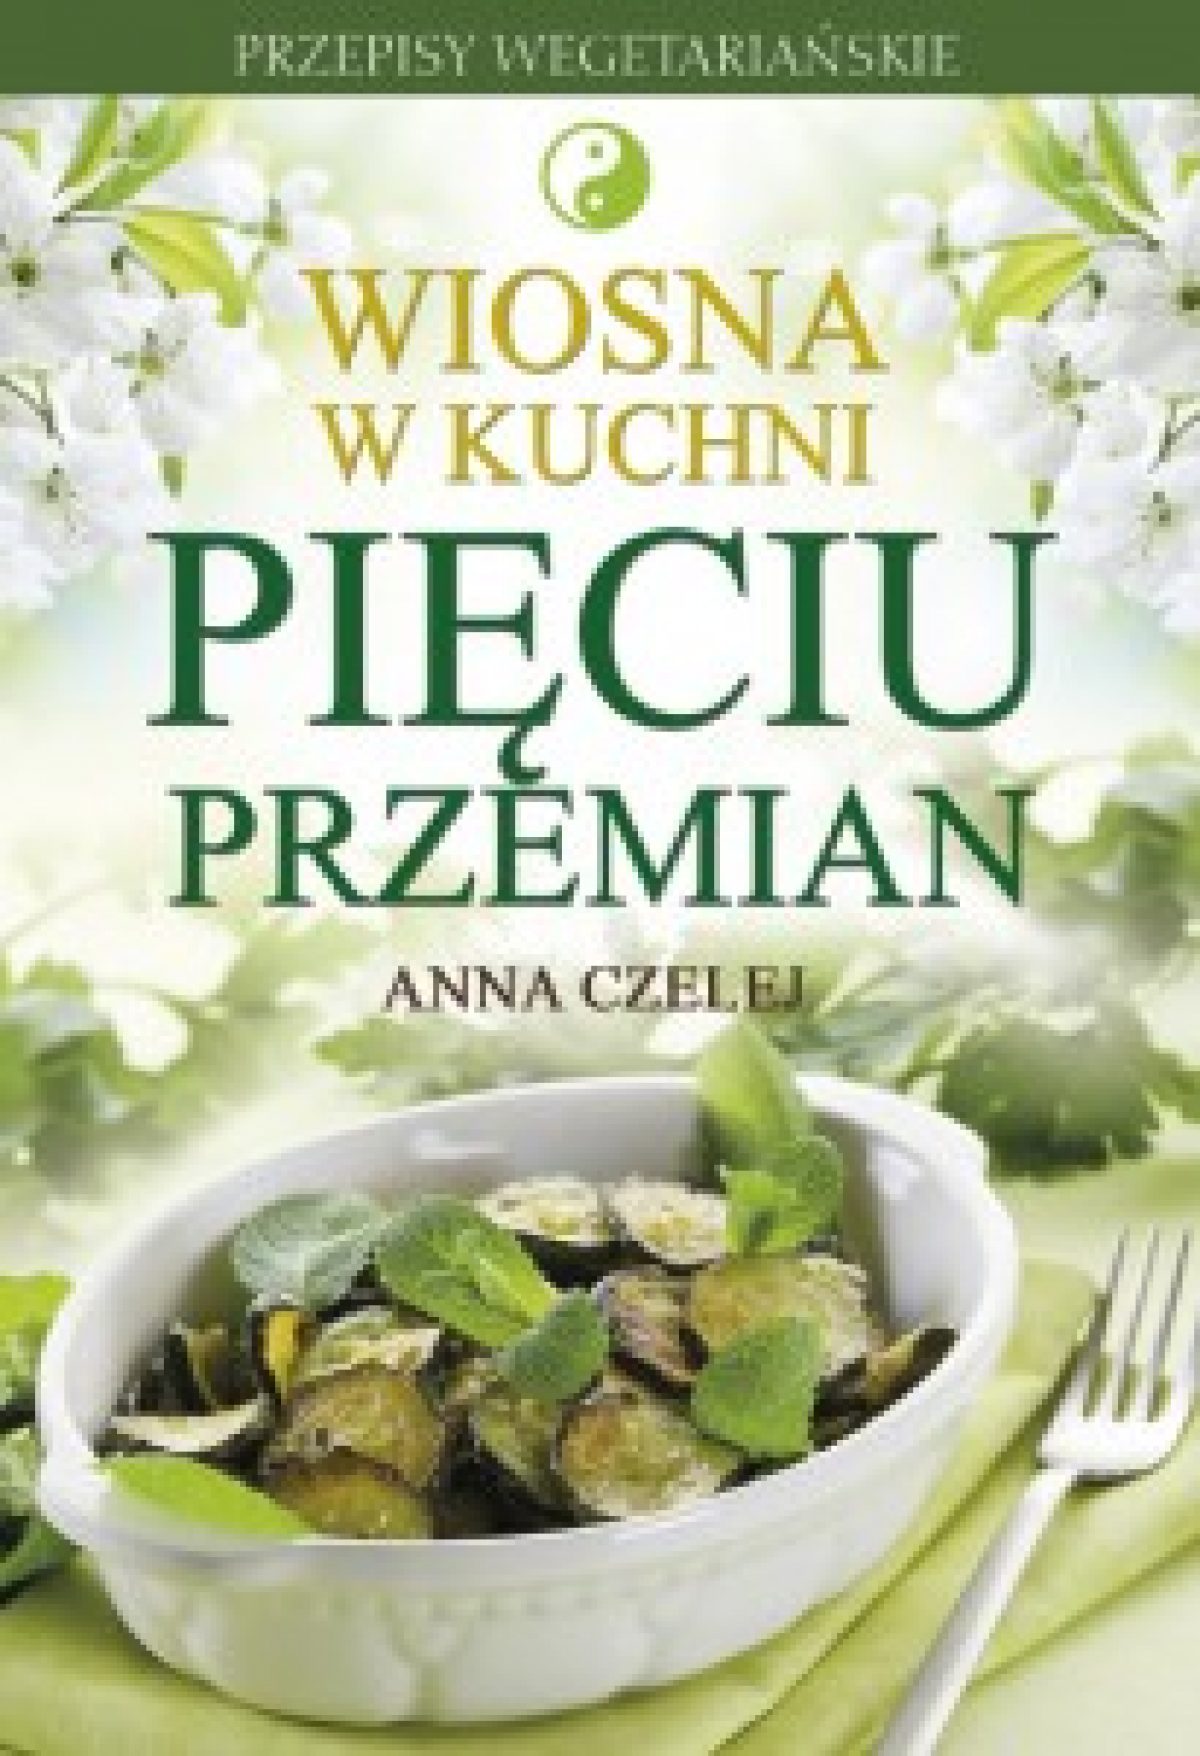 Recenzja książki “Wiosna w kuchni pięciu przemian” Anny Czelej